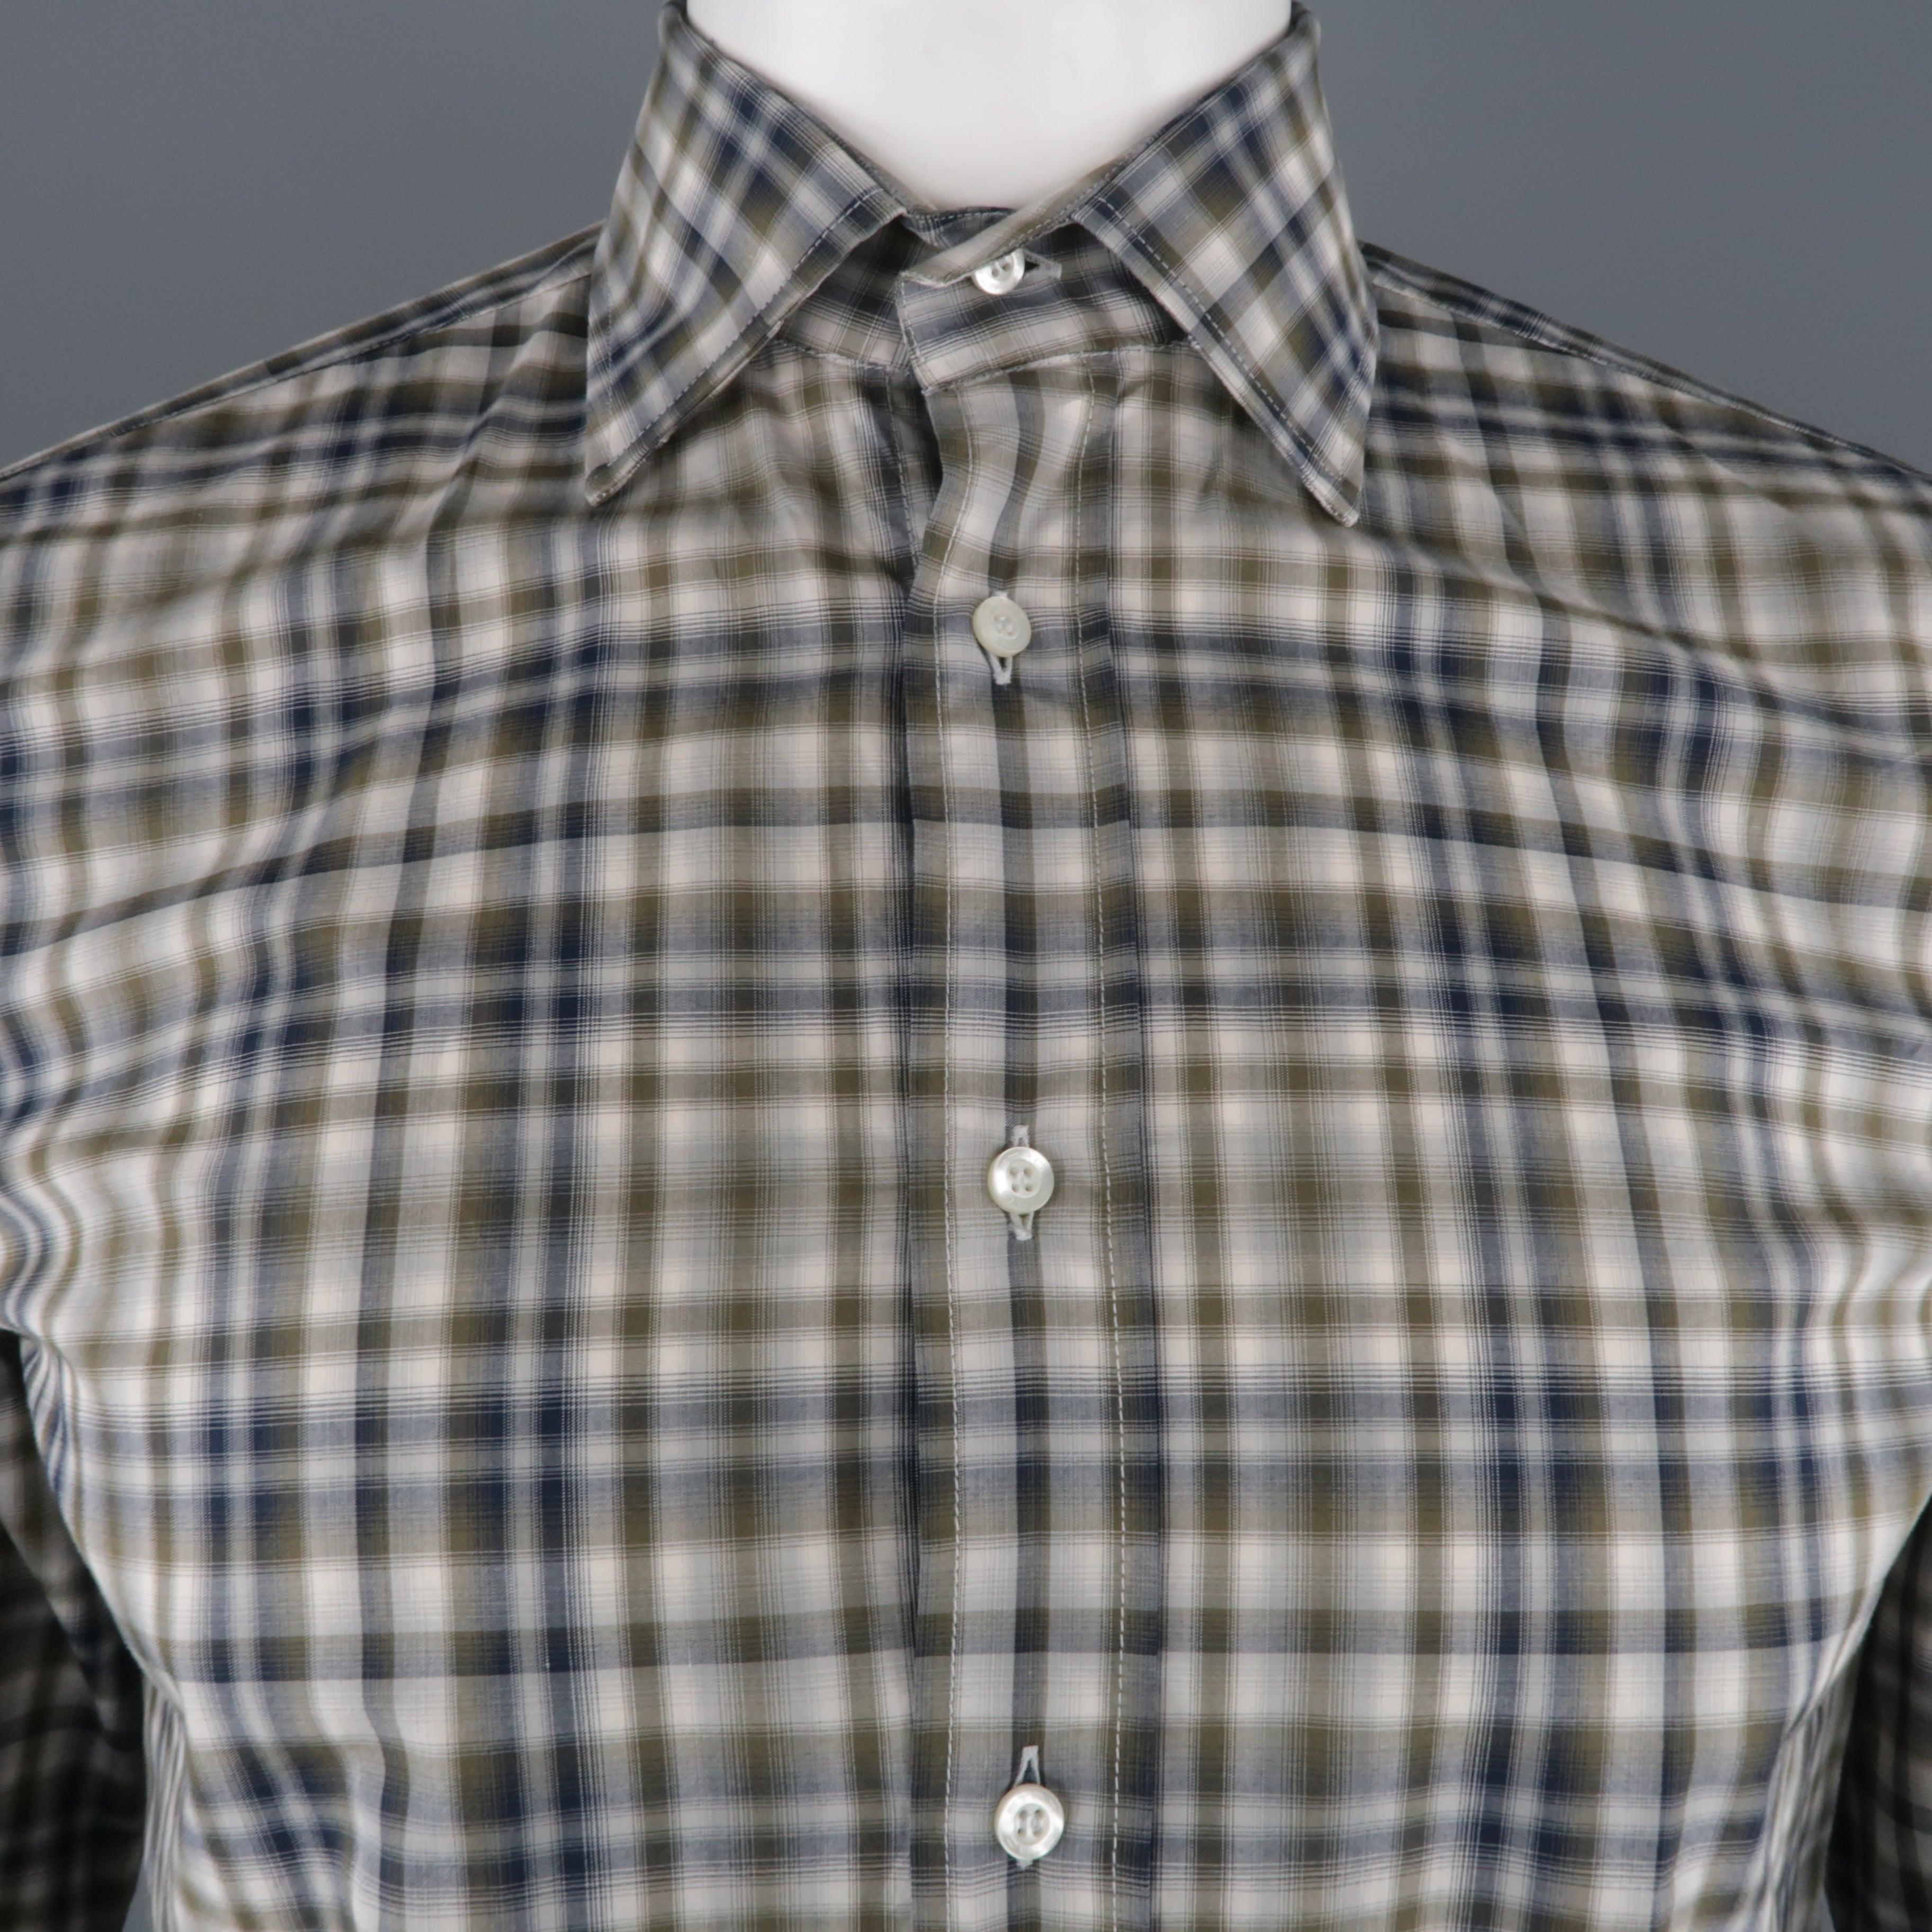 La chemise ETRO se compose d'un coton à carreaux olive et marine et d'un col ouvert. Fabriquées en Italie.
Excellent état d'origine.
 

Marqué :   39
 

Mesures : 
  
l	Epaule : 17 pouces  
l	Poitrine : 45 pouces  
l	Manche : 25.5 pouces 